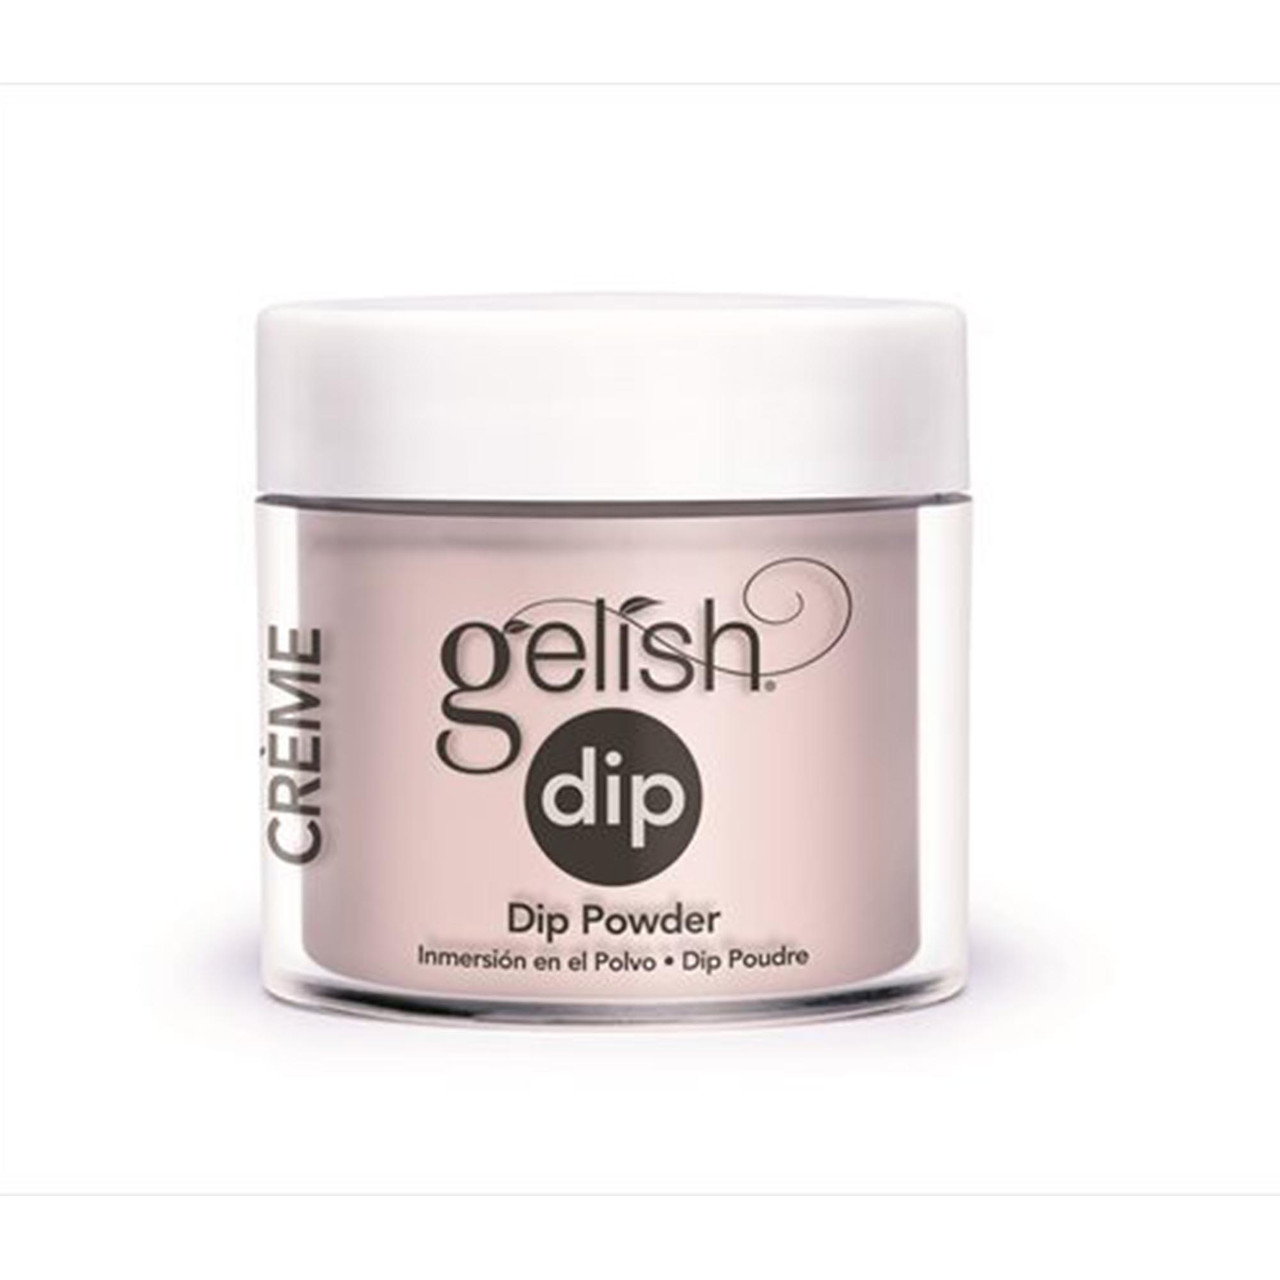 Gelish Dip Powder - 1610019 - Polished Up